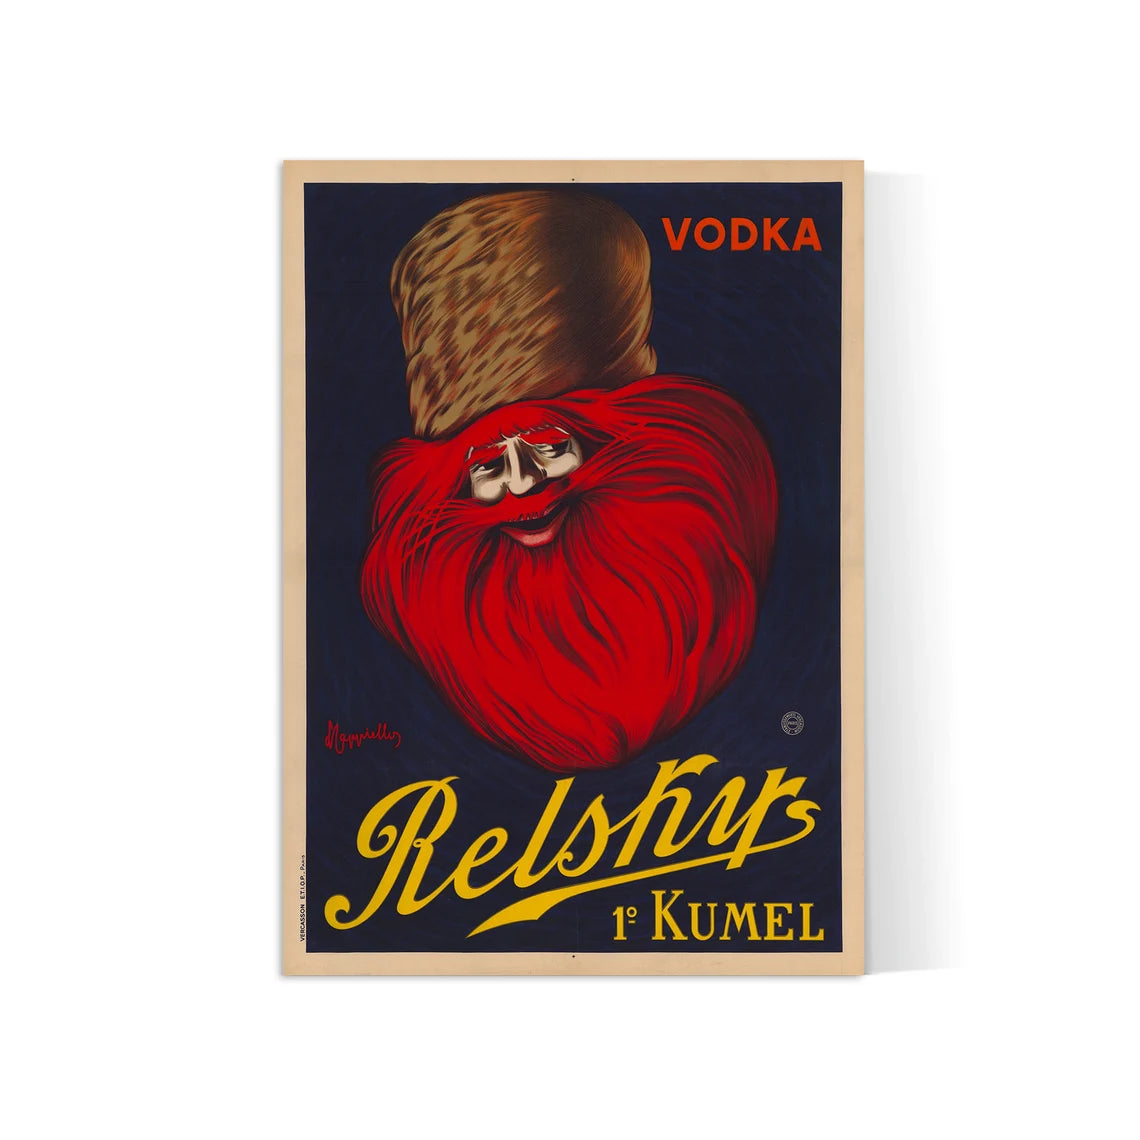 Affiche alcool vintage "Vodka Relsky" - Leonetto Cappiello - Haute Définition - papier mat 230gr/m2